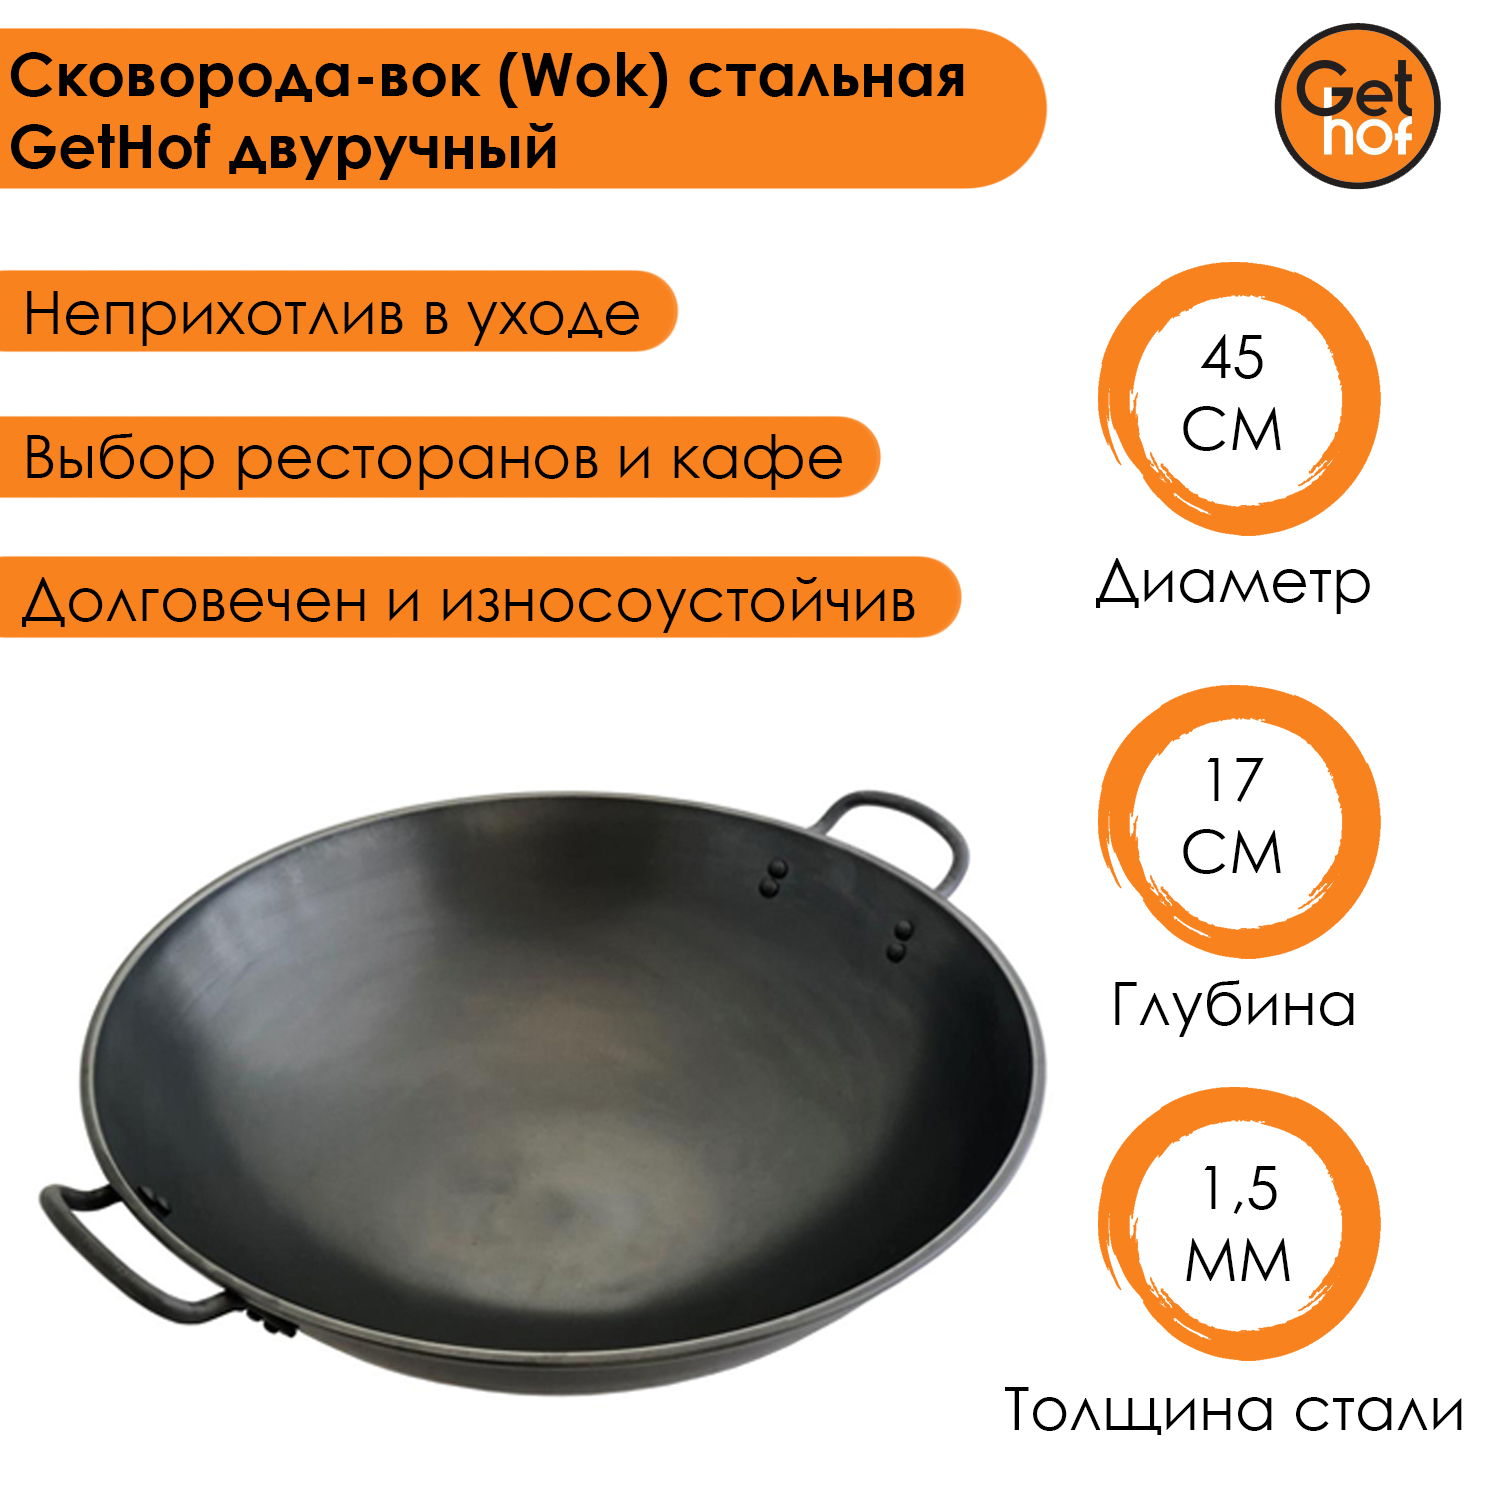 Сковорода-вок (Wok) стальная GetHof BlackStyle двуручный 45 см